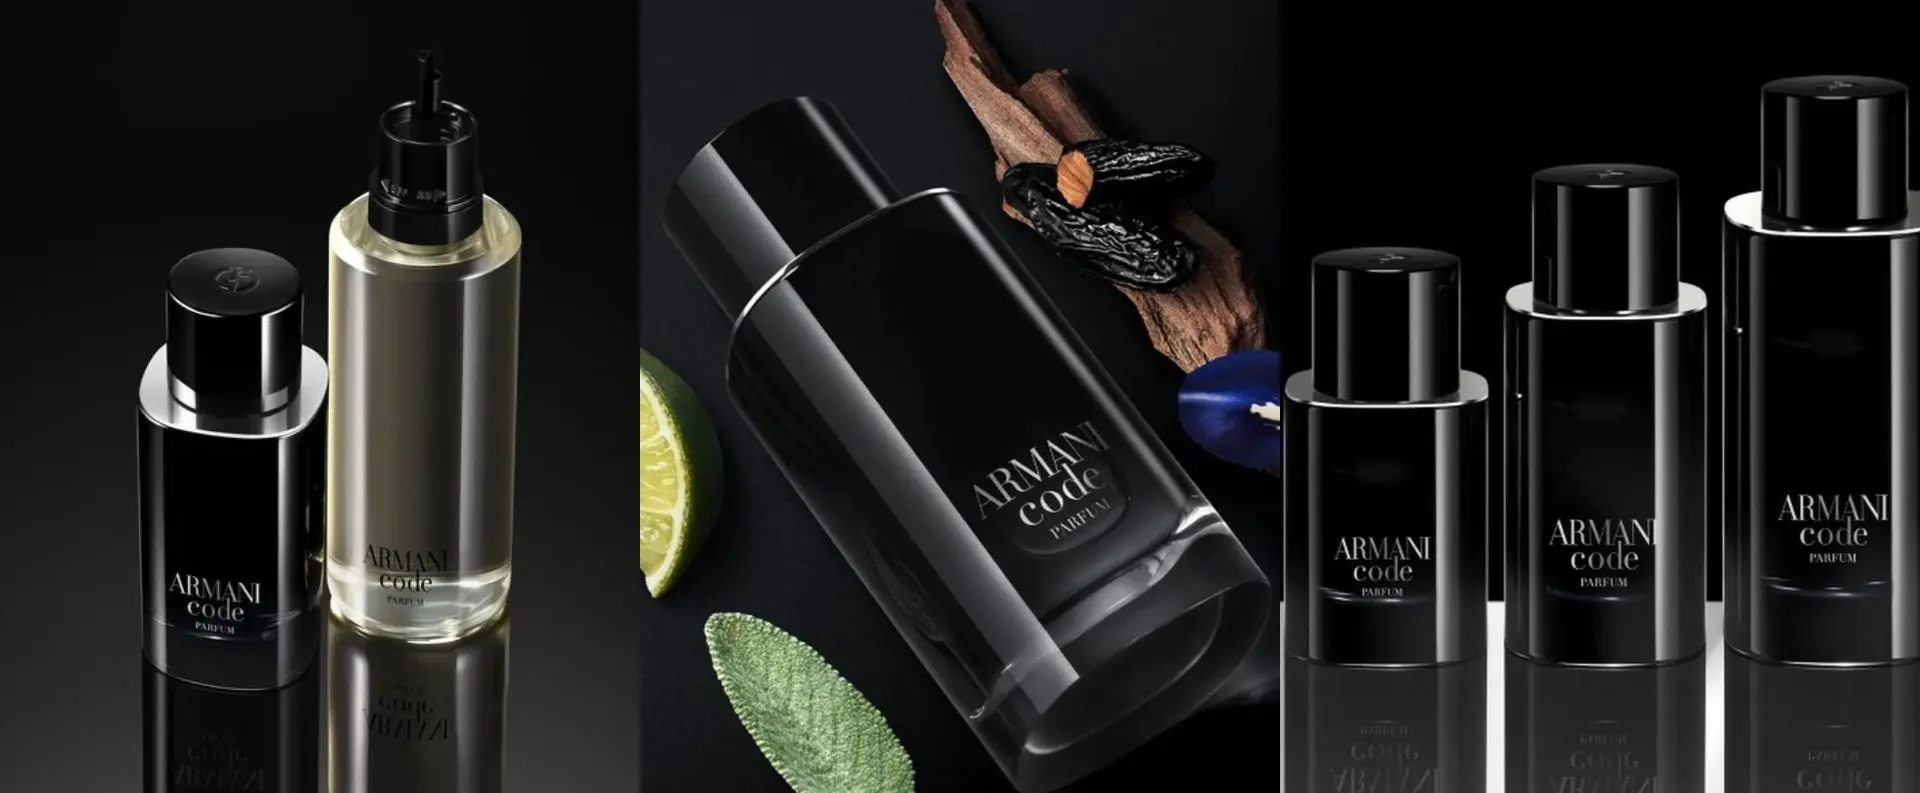 Armani Code, un perfume para hombres clásico con nueva versión — Muy  Cosmopolitas